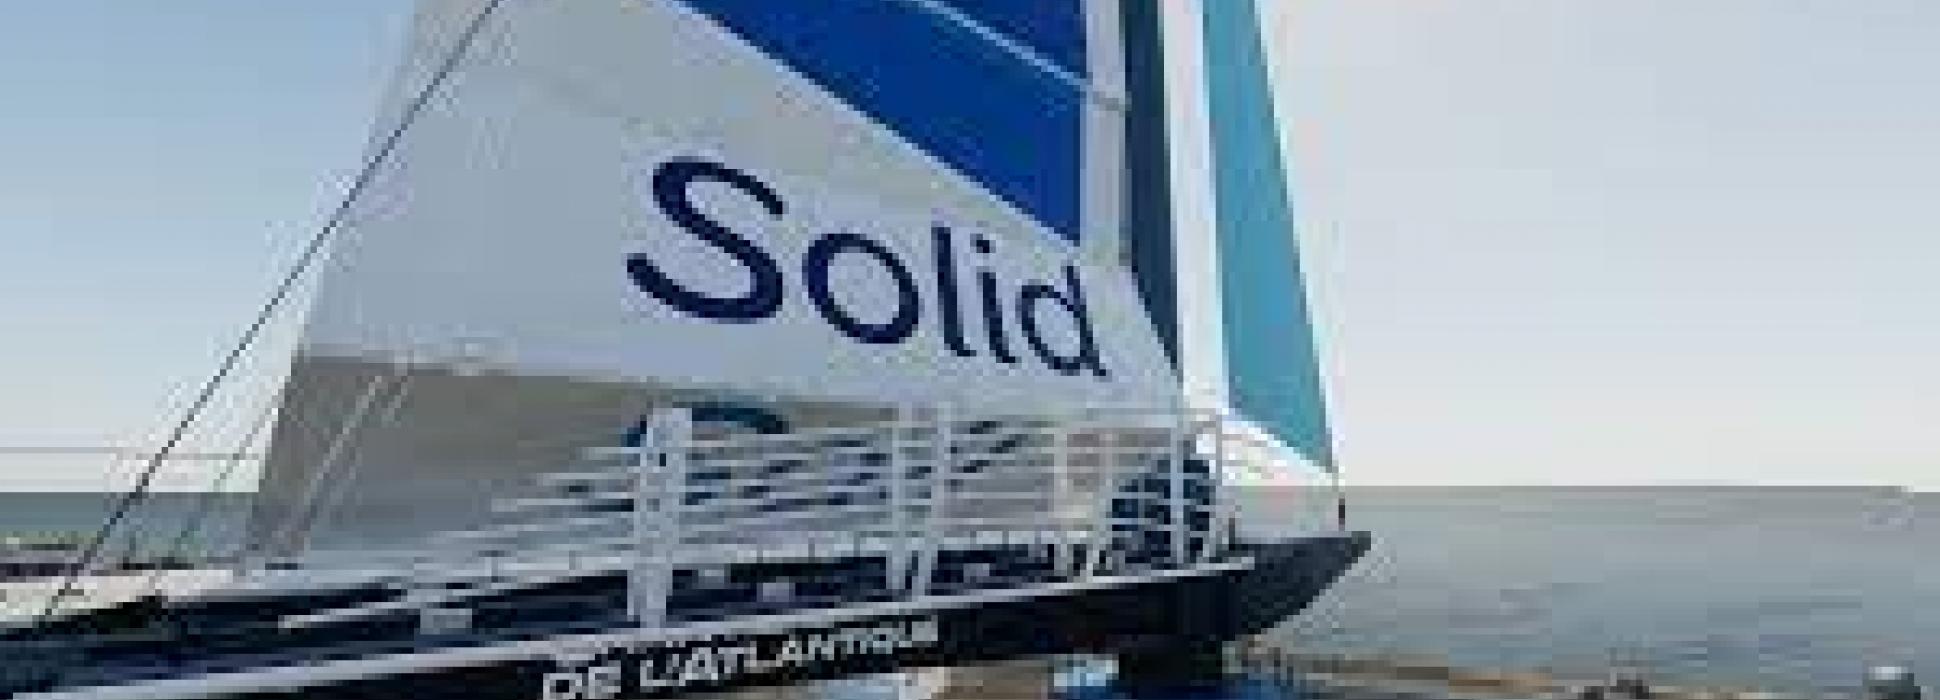 Chantiers de l’Atlantique s’associent des entreprises du Morbihan pour créer la société SolidSail Mast Factory